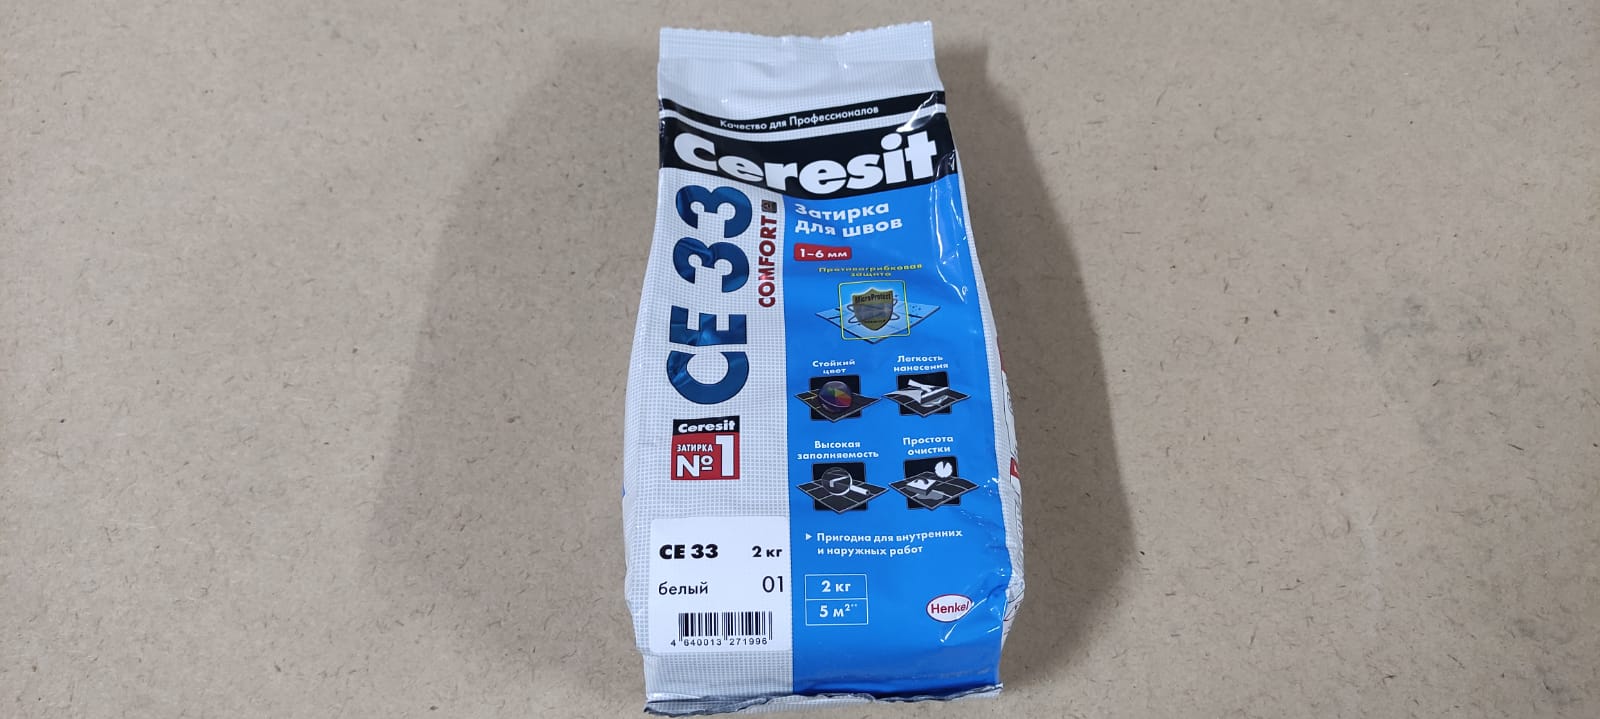 Затирка для швов 1-5 мм Ceresit СЕ 33 Comfort (цвет - белый) 2 кг